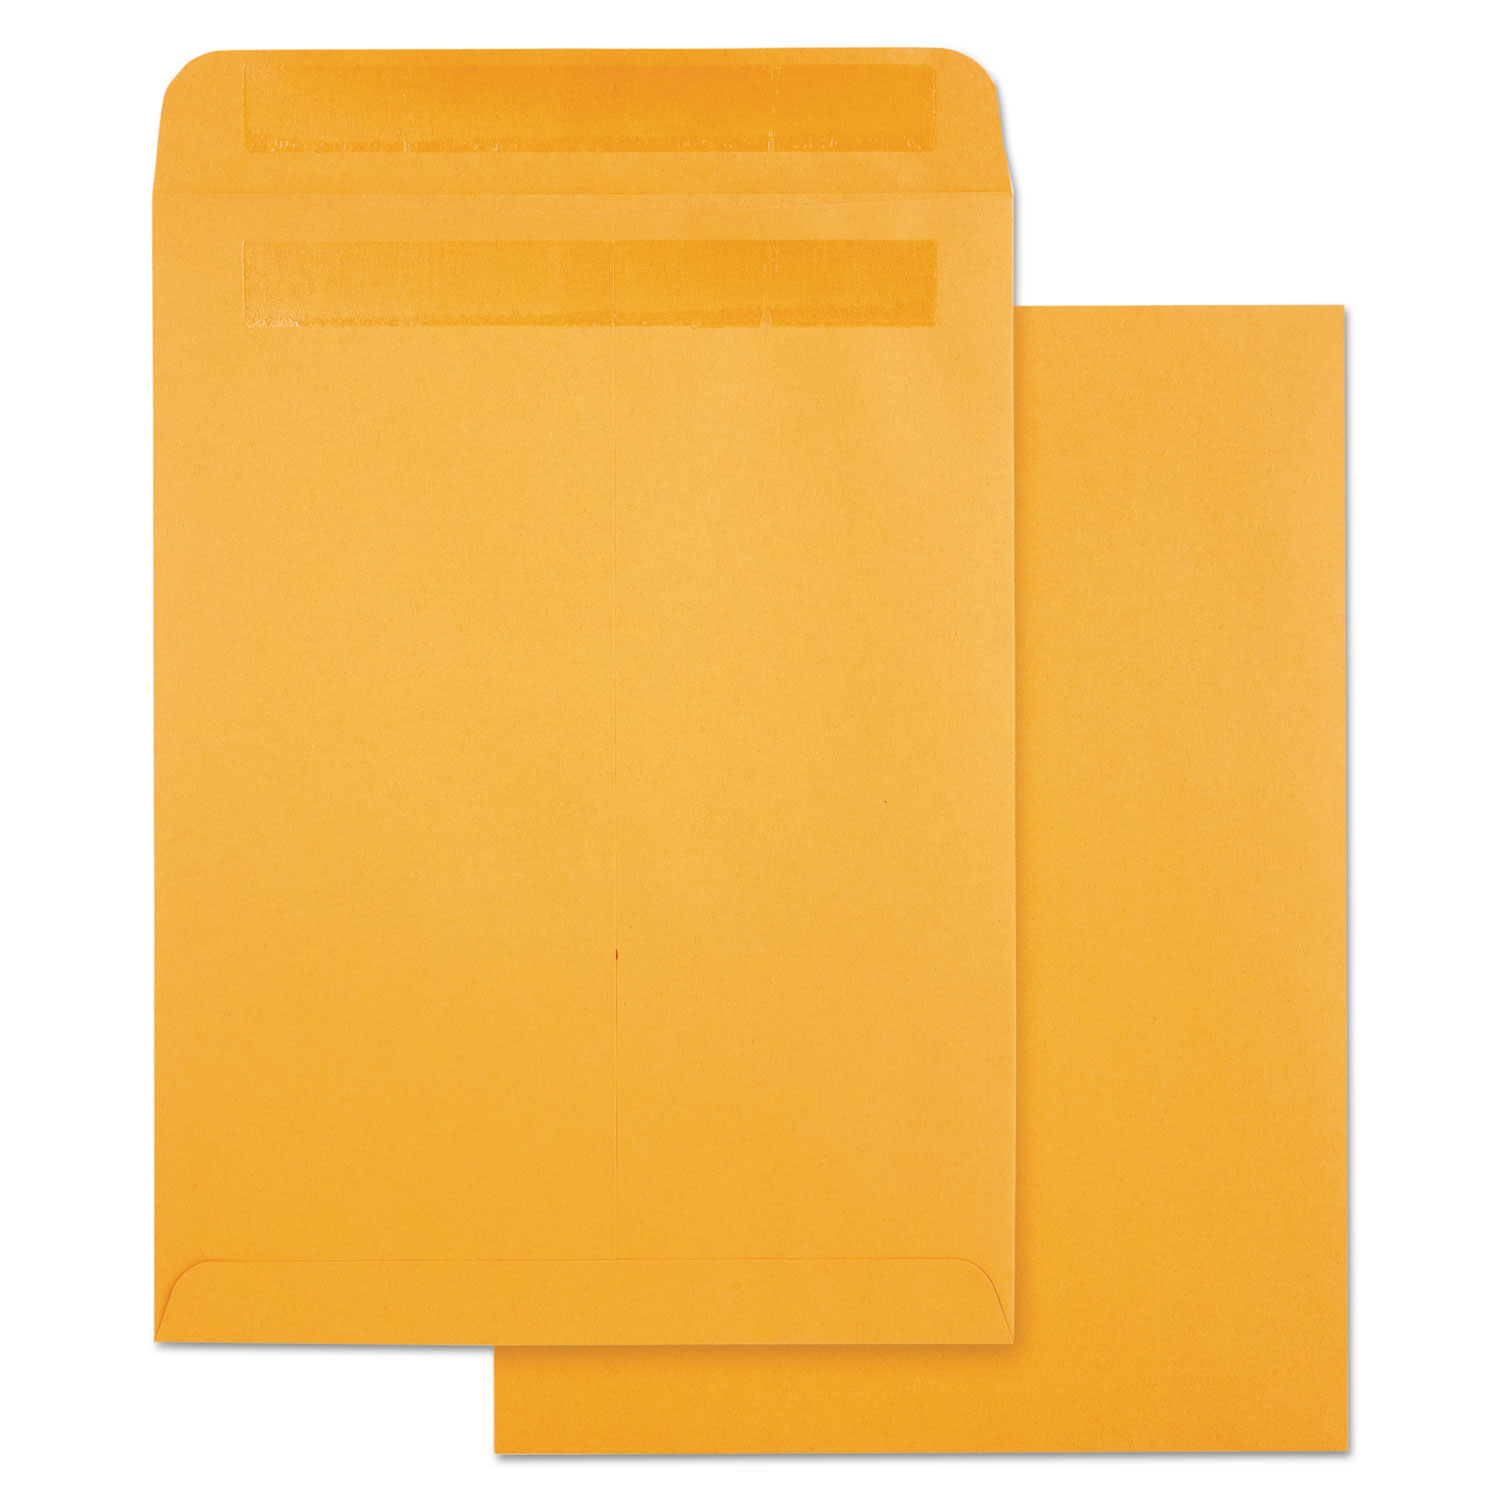  Quality Park QUA43563 High Bulk Self-Sealing Envelopes, #10 1/2, Cheese Blade Flap, Redi-Seal Closure, 9 x 12, Brown Kraft, 100/Box (QUA43563) 